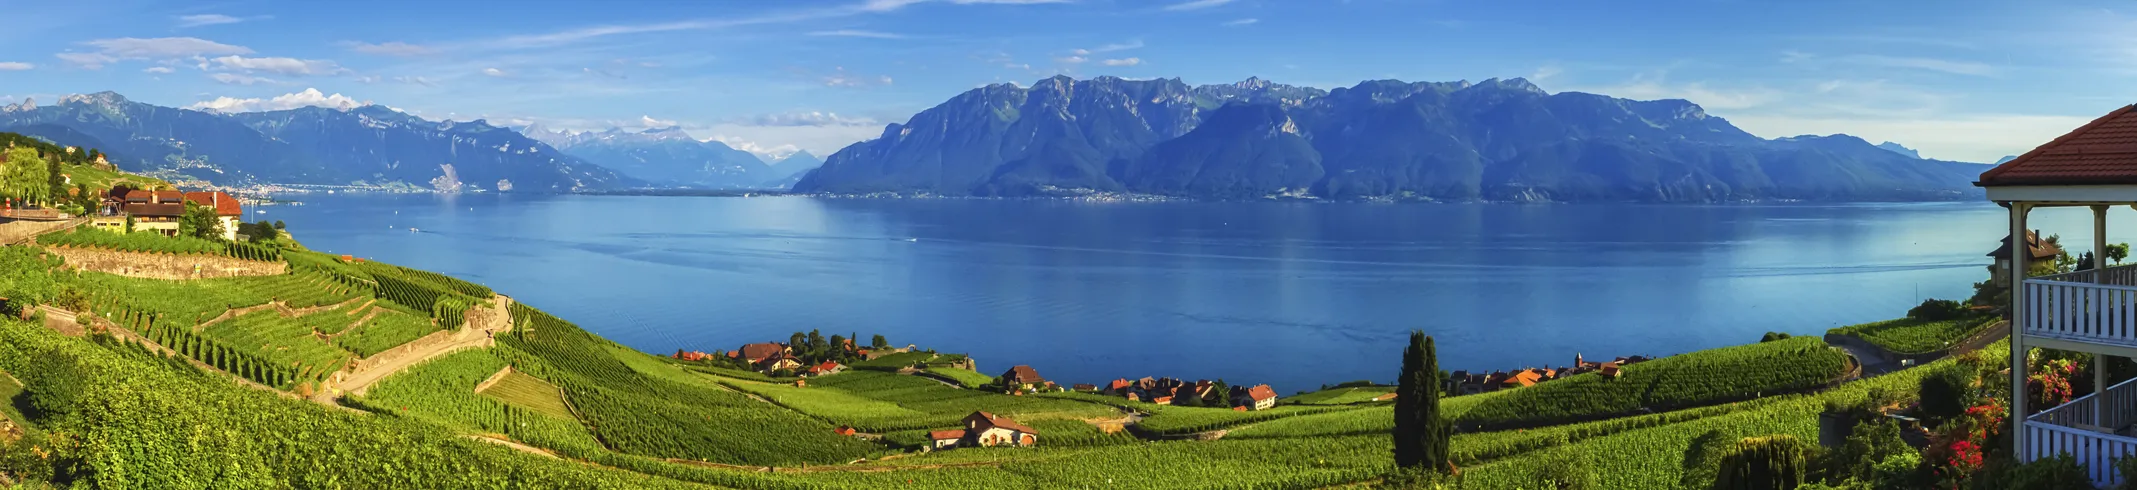 Lavaux une région viticole du canton de Vaud en Suisse. © iStock / lenarts108